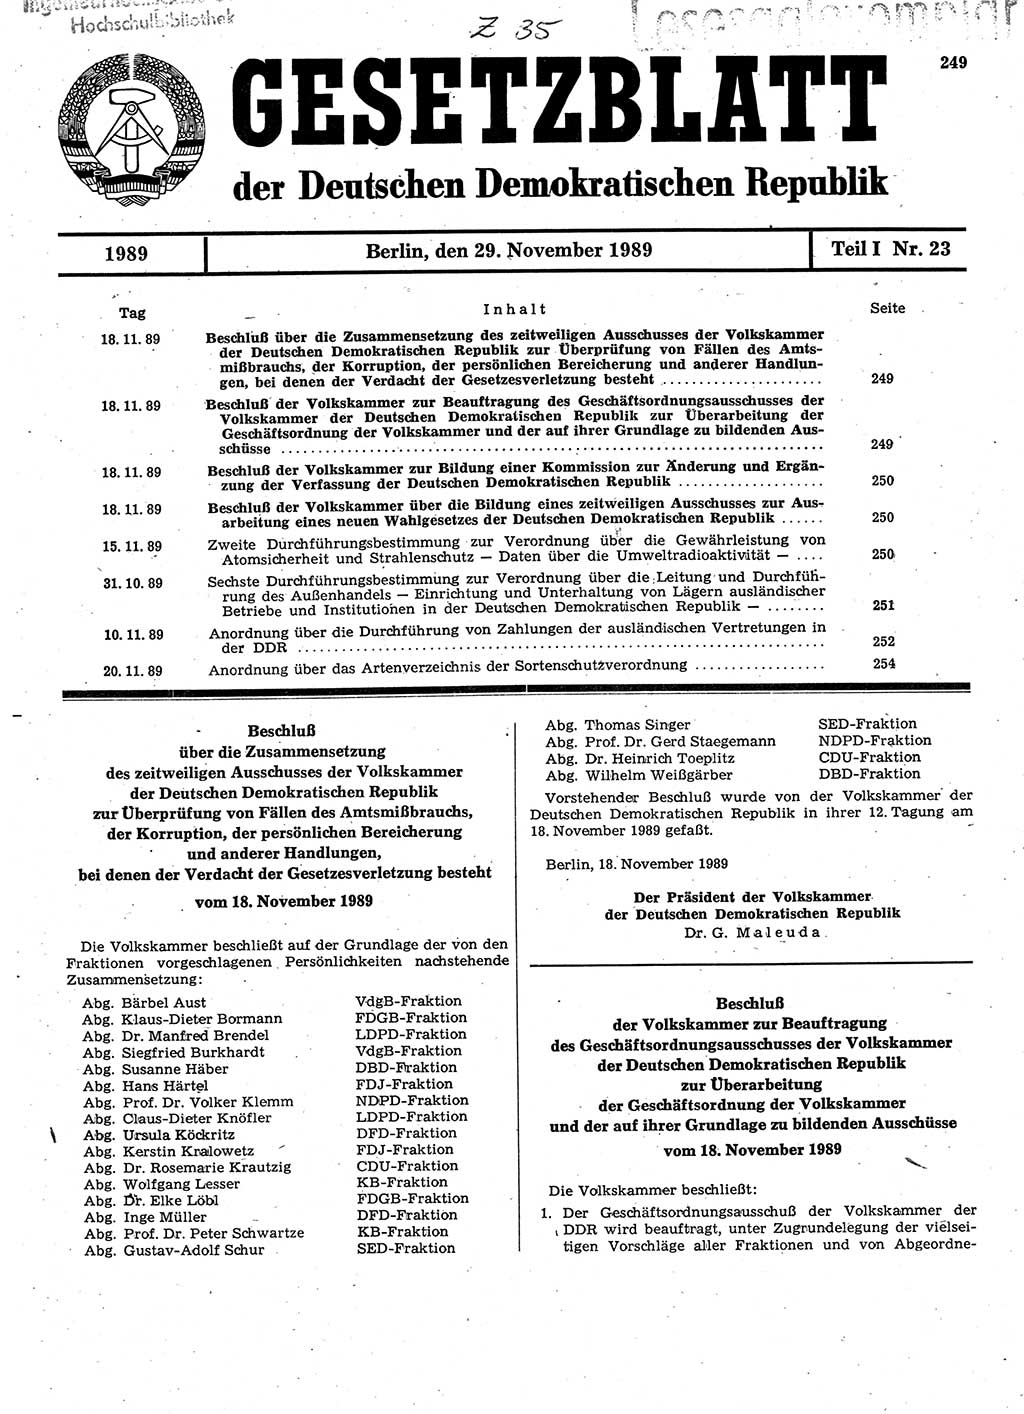 Gesetzblatt (GBl.) der Deutschen Demokratischen Republik (DDR) Teil Ⅰ 1989, Seite 249 (GBl. DDR Ⅰ 1989, S. 249)